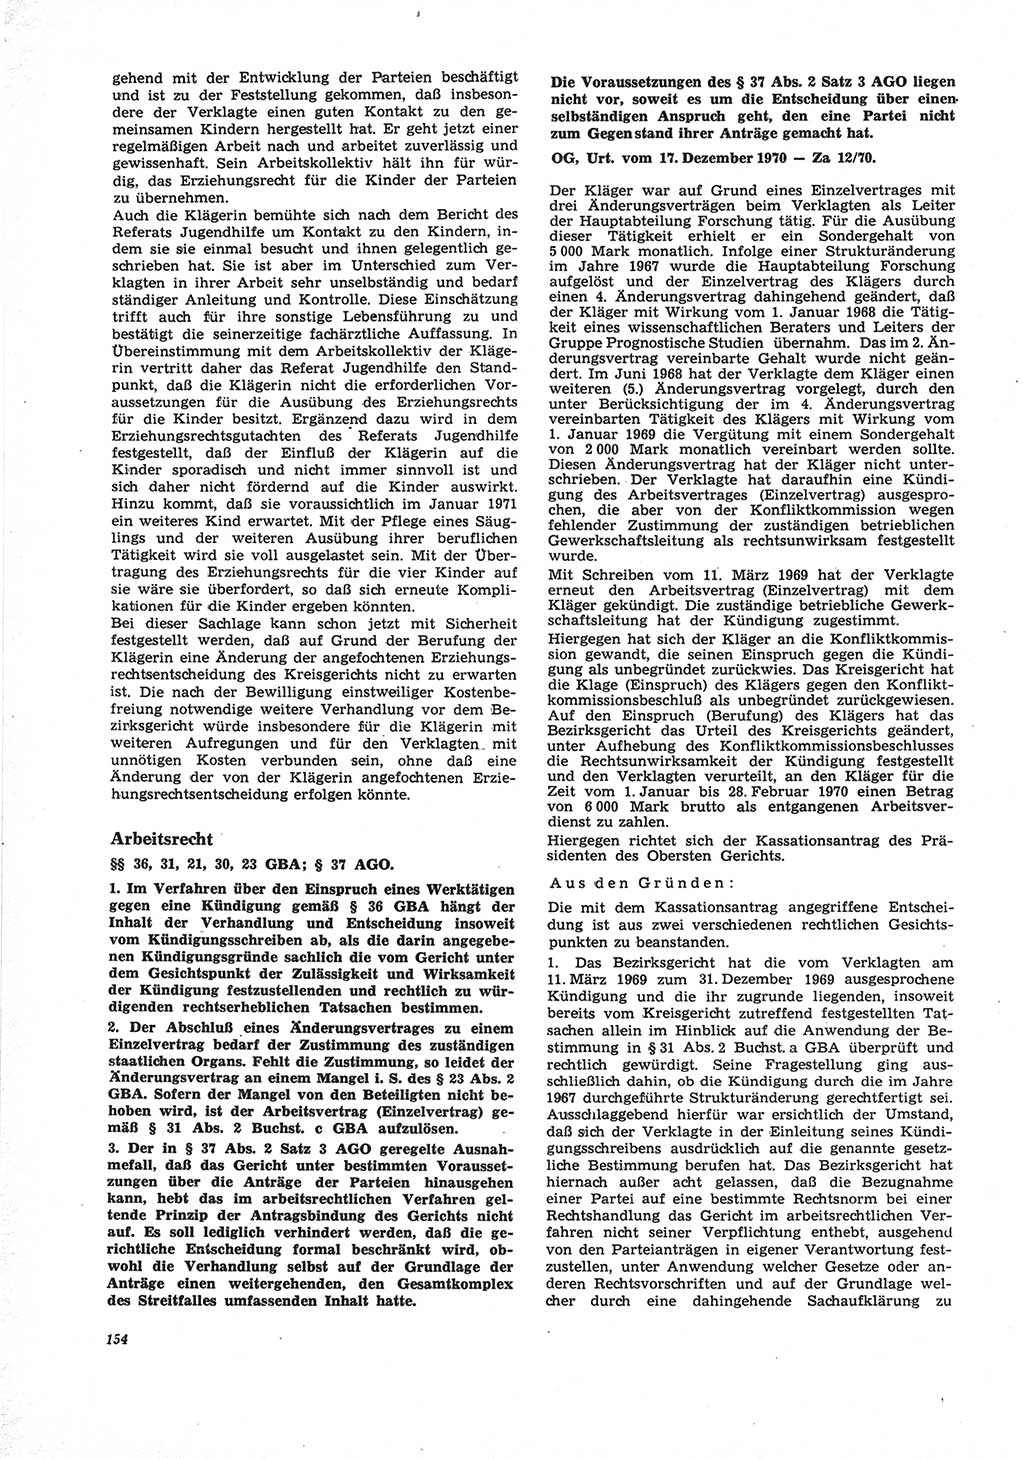 Neue Justiz (NJ), Zeitschrift für Recht und Rechtswissenschaft [Deutsche Demokratische Republik (DDR)], 25. Jahrgang 1971, Seite 154 (NJ DDR 1971, S. 154)